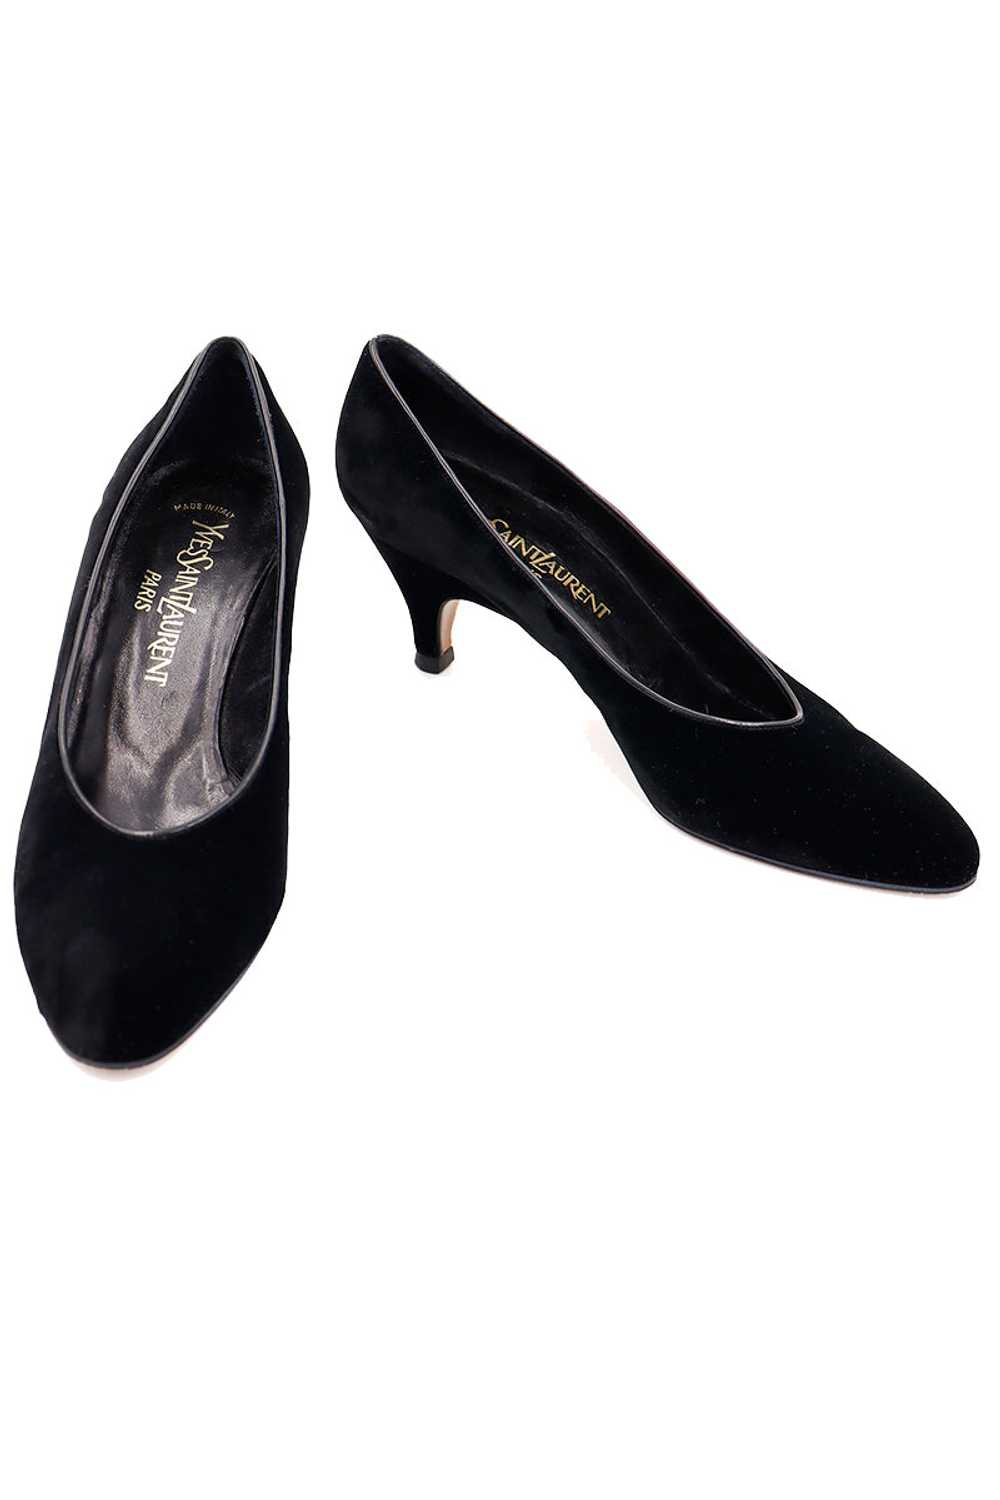 1980s YSL Vintage Black Velvet Evening Pumps Shoes - image 1